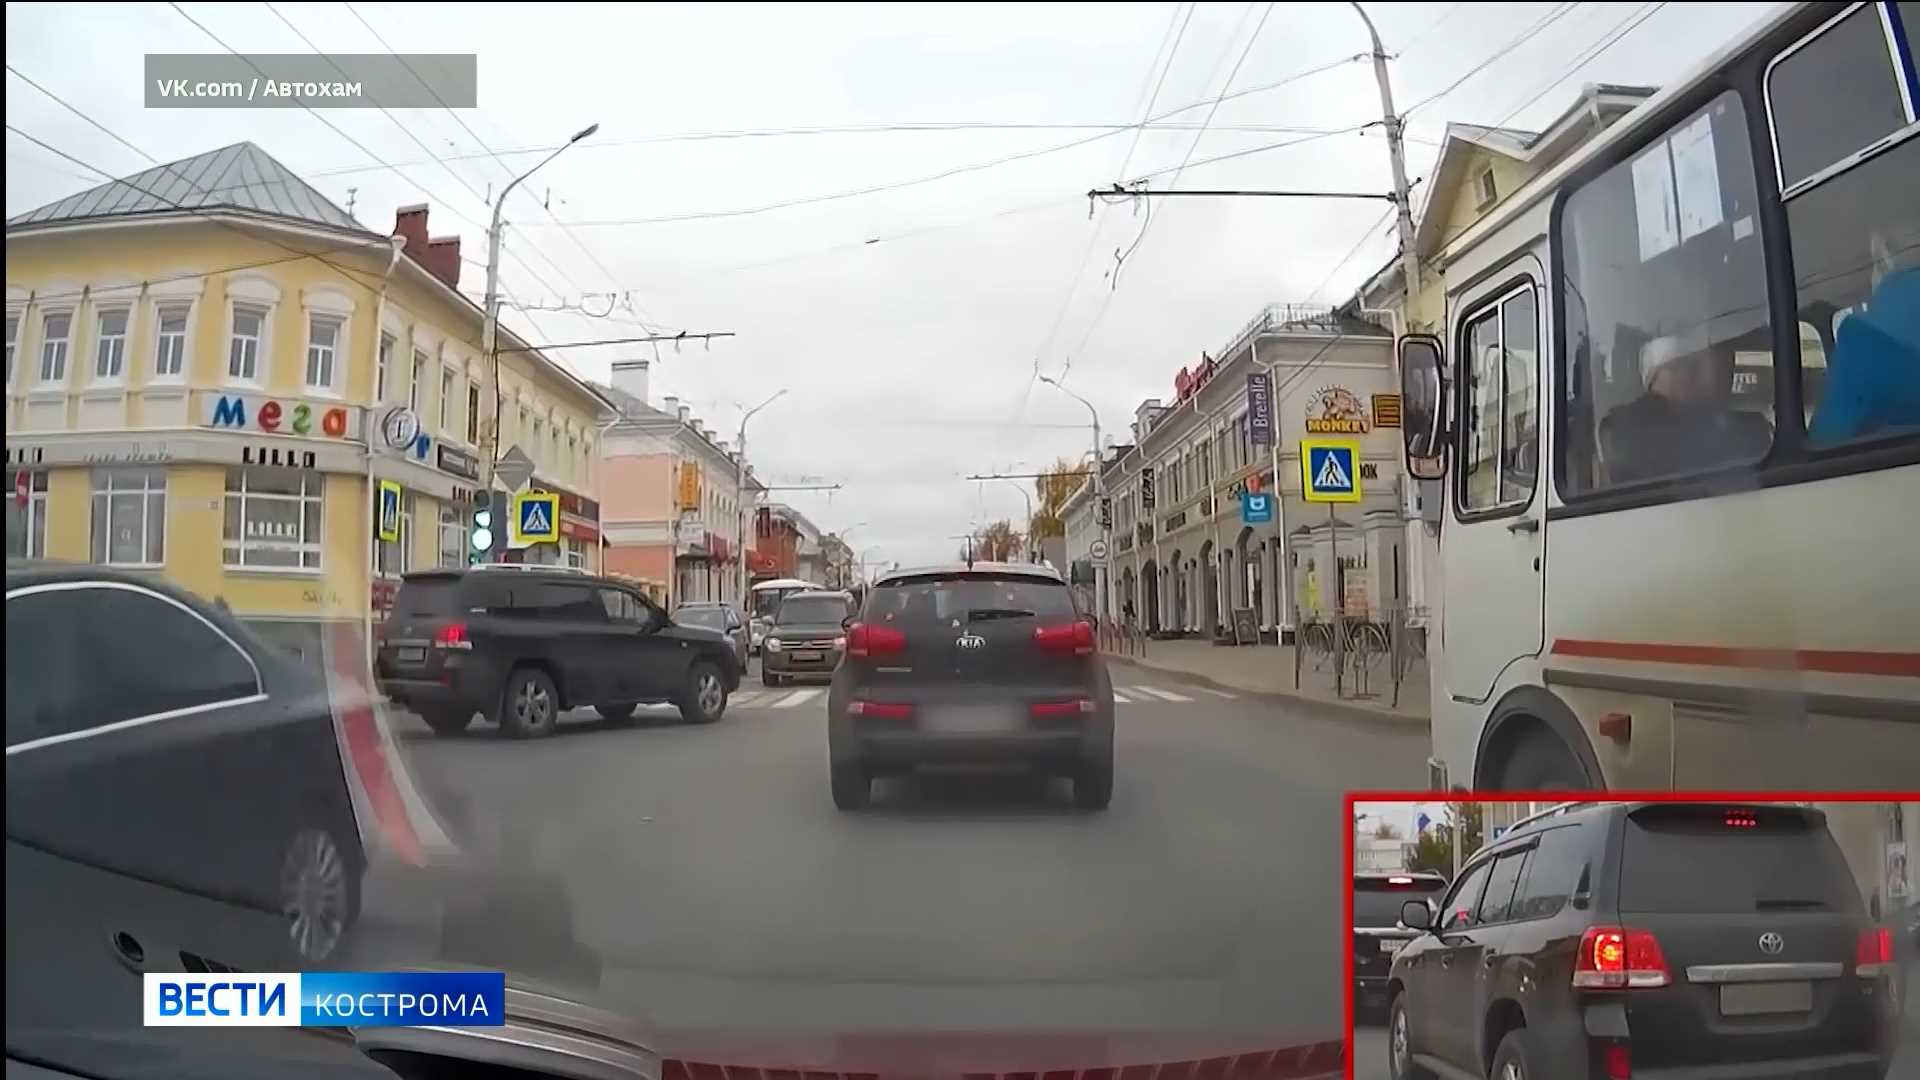 Костромским водителям - героям роликов соцсетей приходится объясняться в ГИБДД